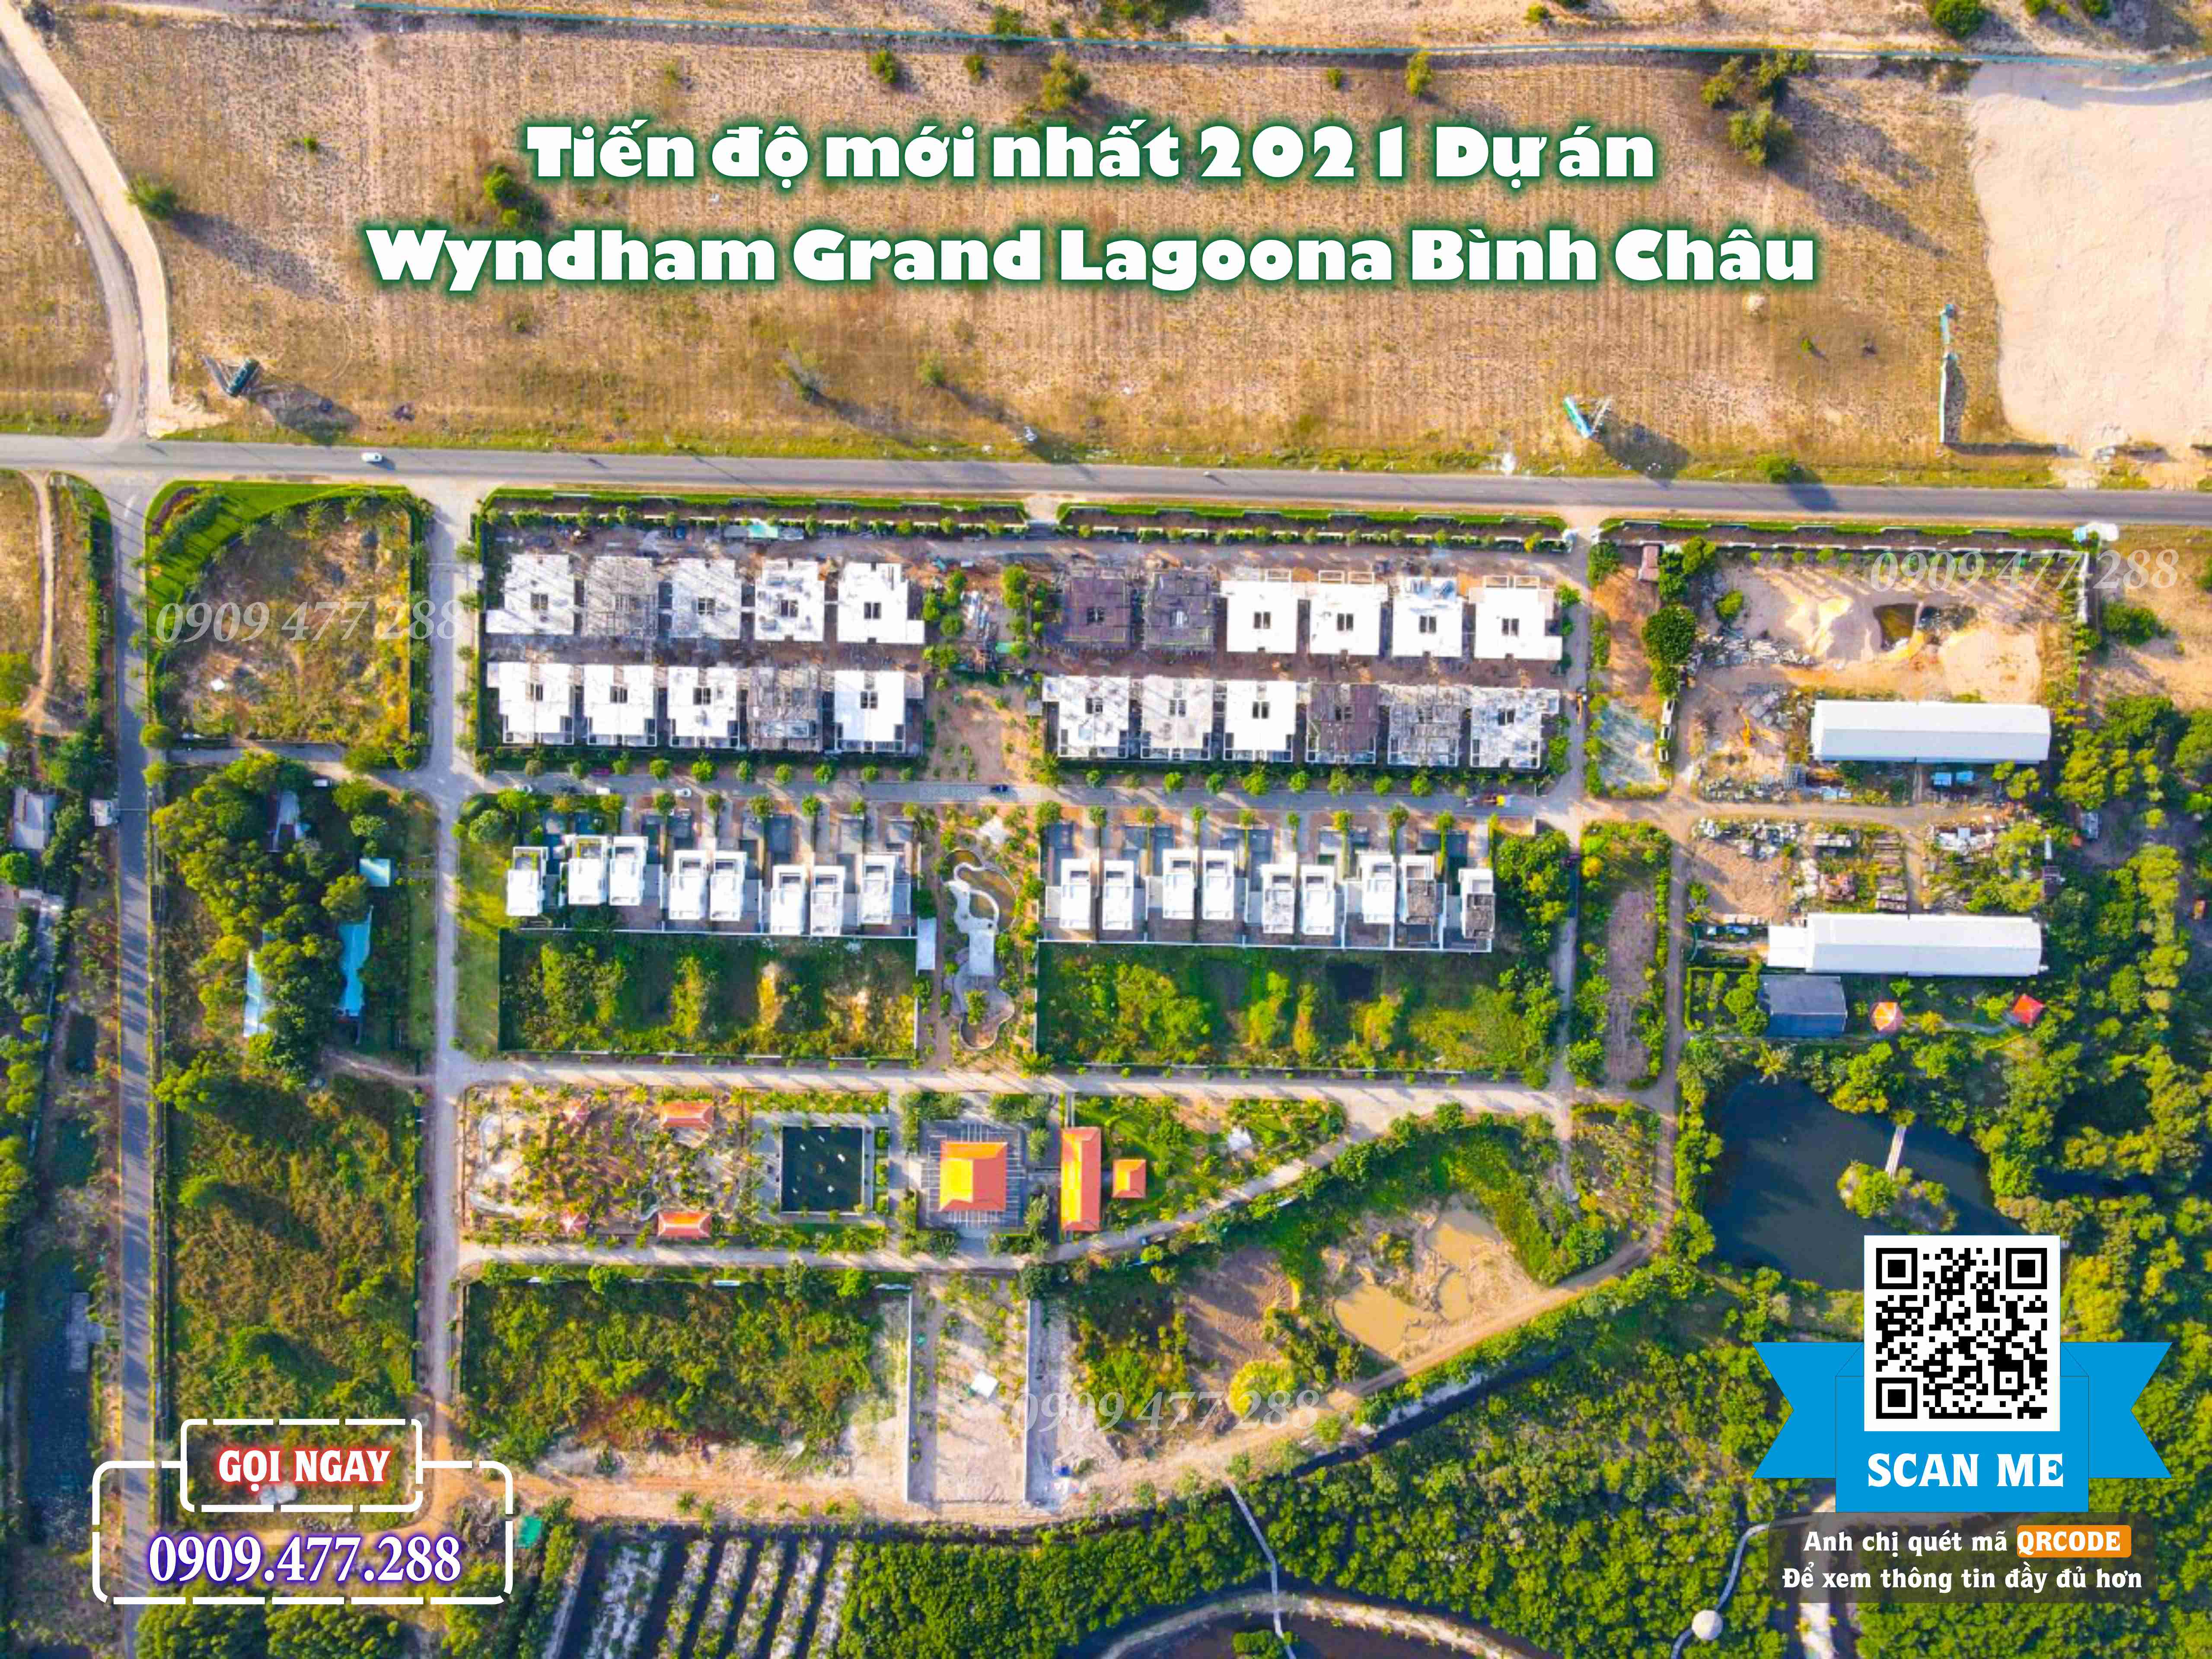 Wyndham Grand Lagoona Bình Châu (20)